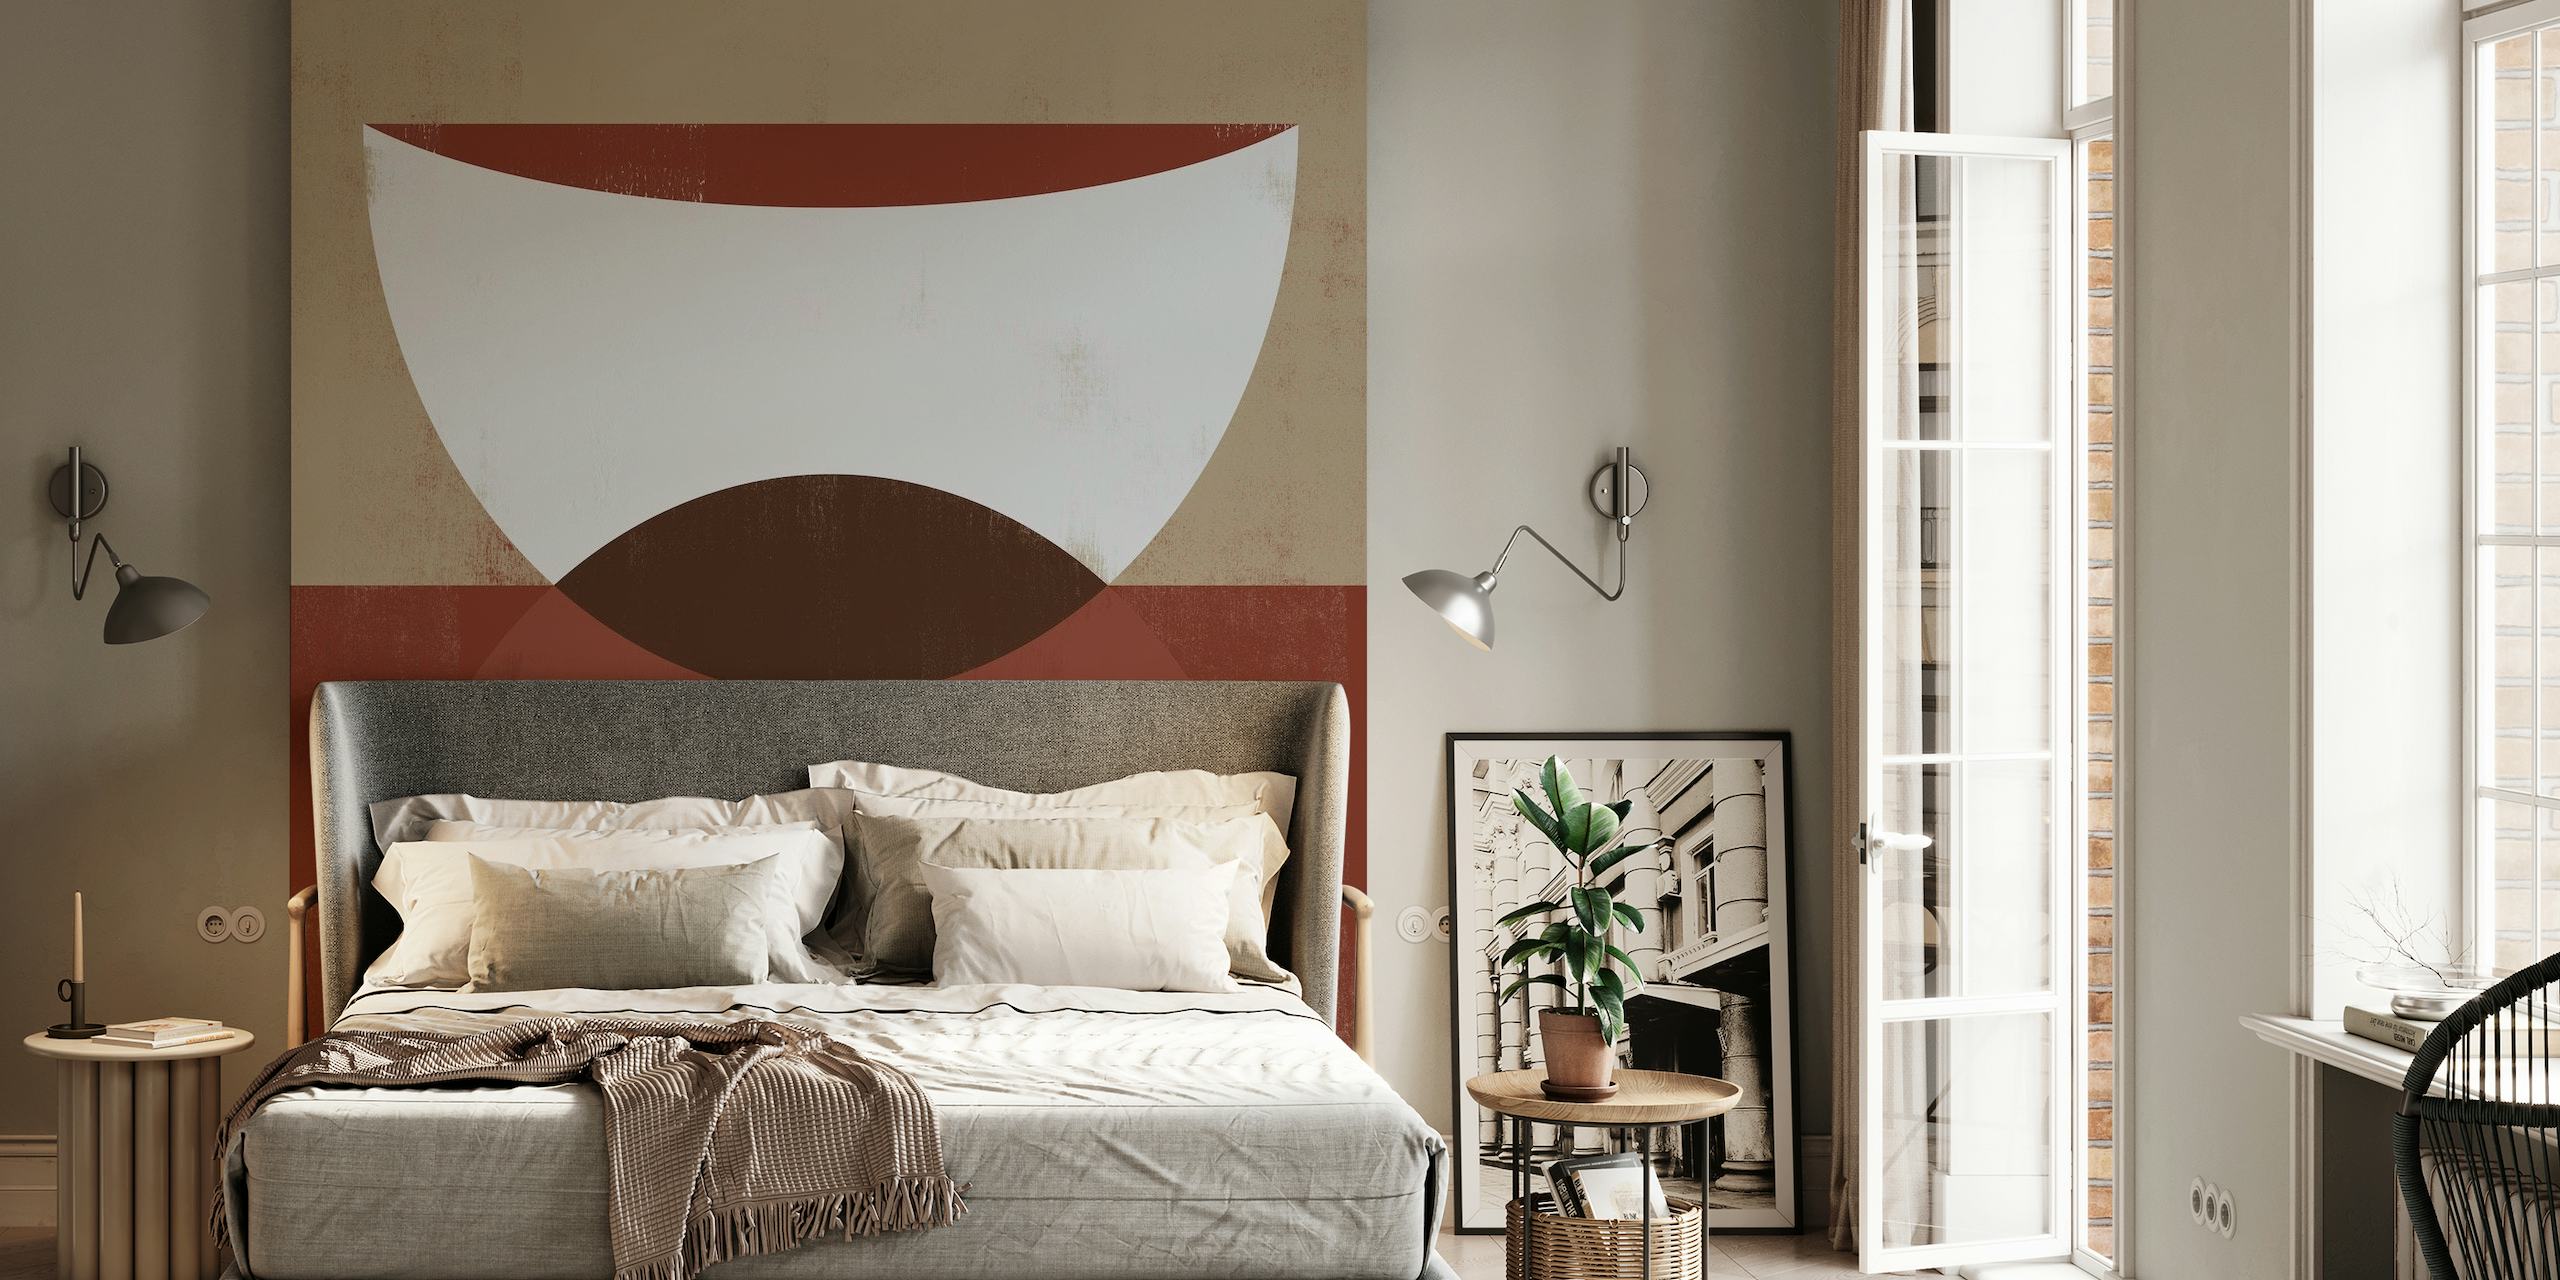 SHE Rouge 4 abstracte geometrische muurschildering in crème, bruin en kastanjebruin